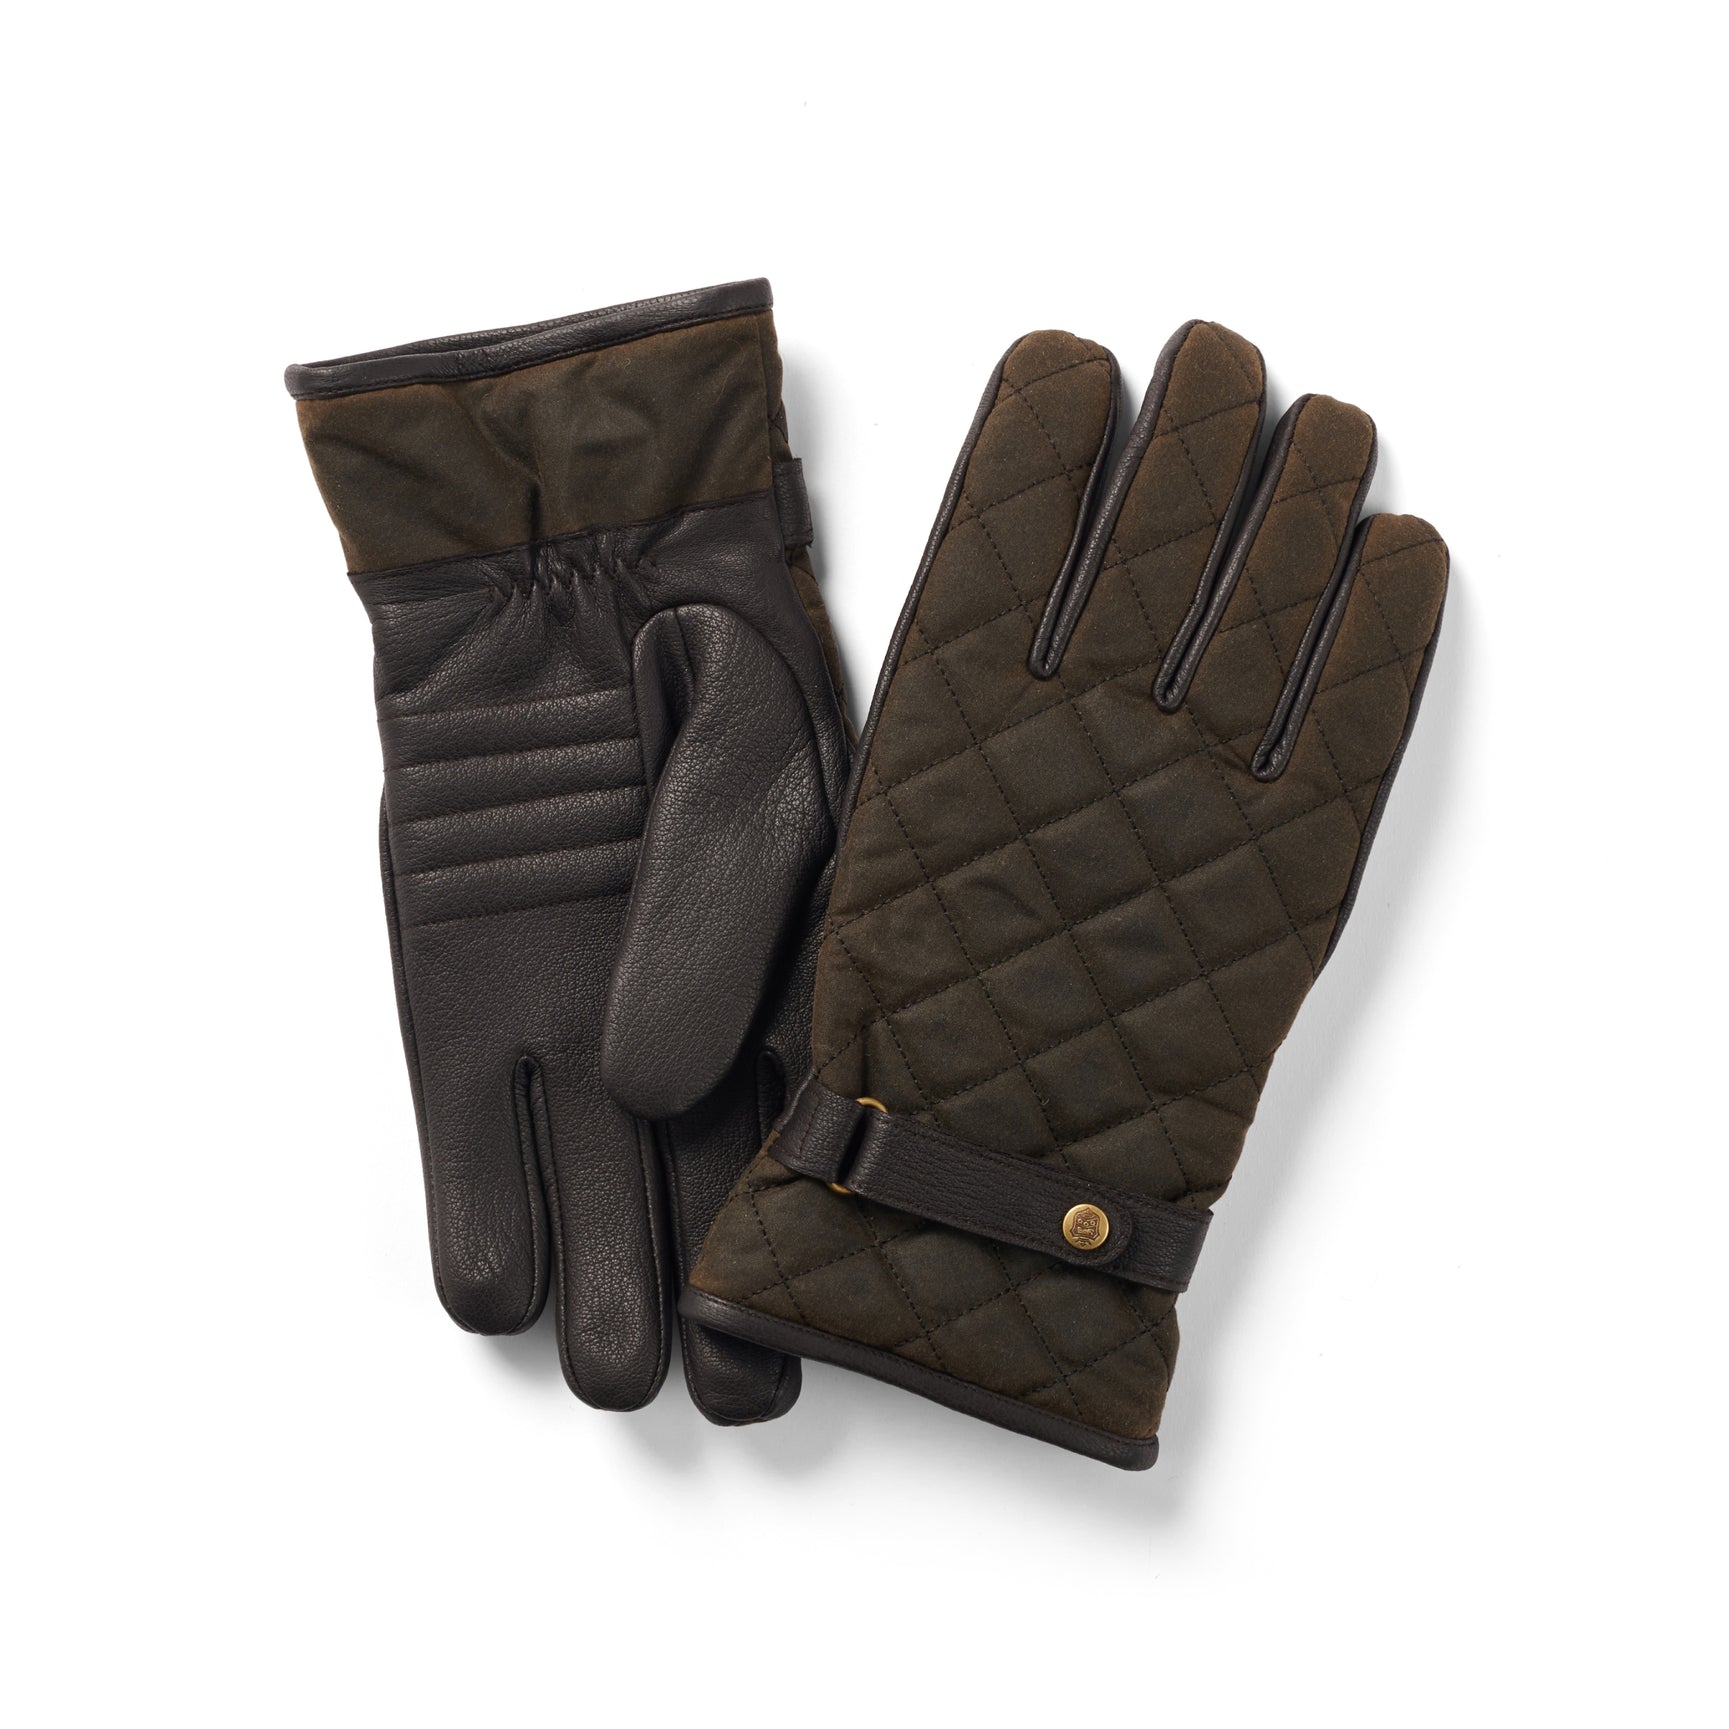 Se Handske Wax-Leather, oilskin/læder, oliven/brun - S hos Godsejeren